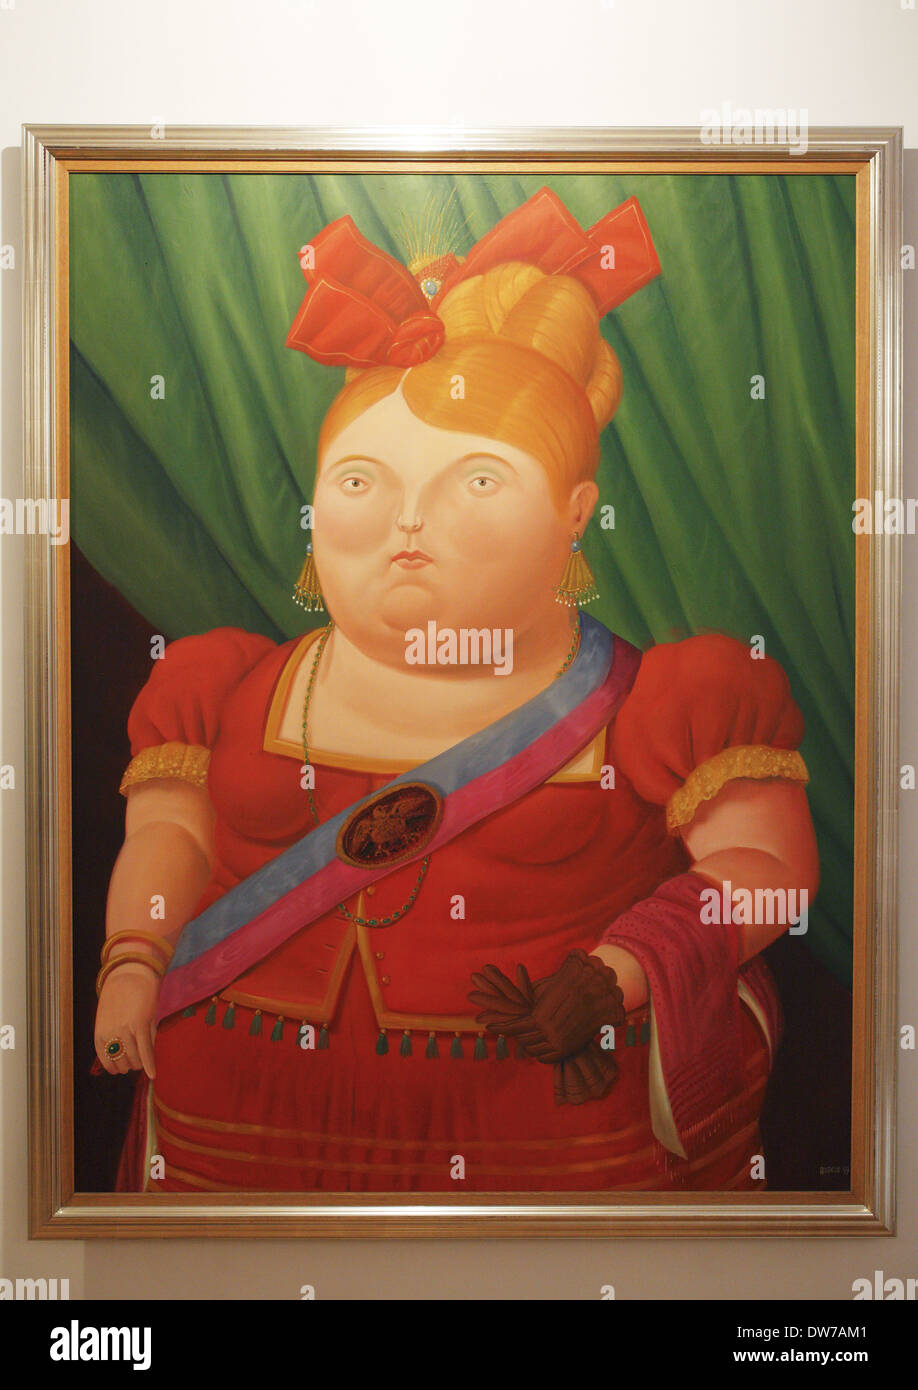 La primera dama (1997) by Fernando Botero, Botero Museum of the Banco de la República,  Bogotá, Colombia Stock Photo